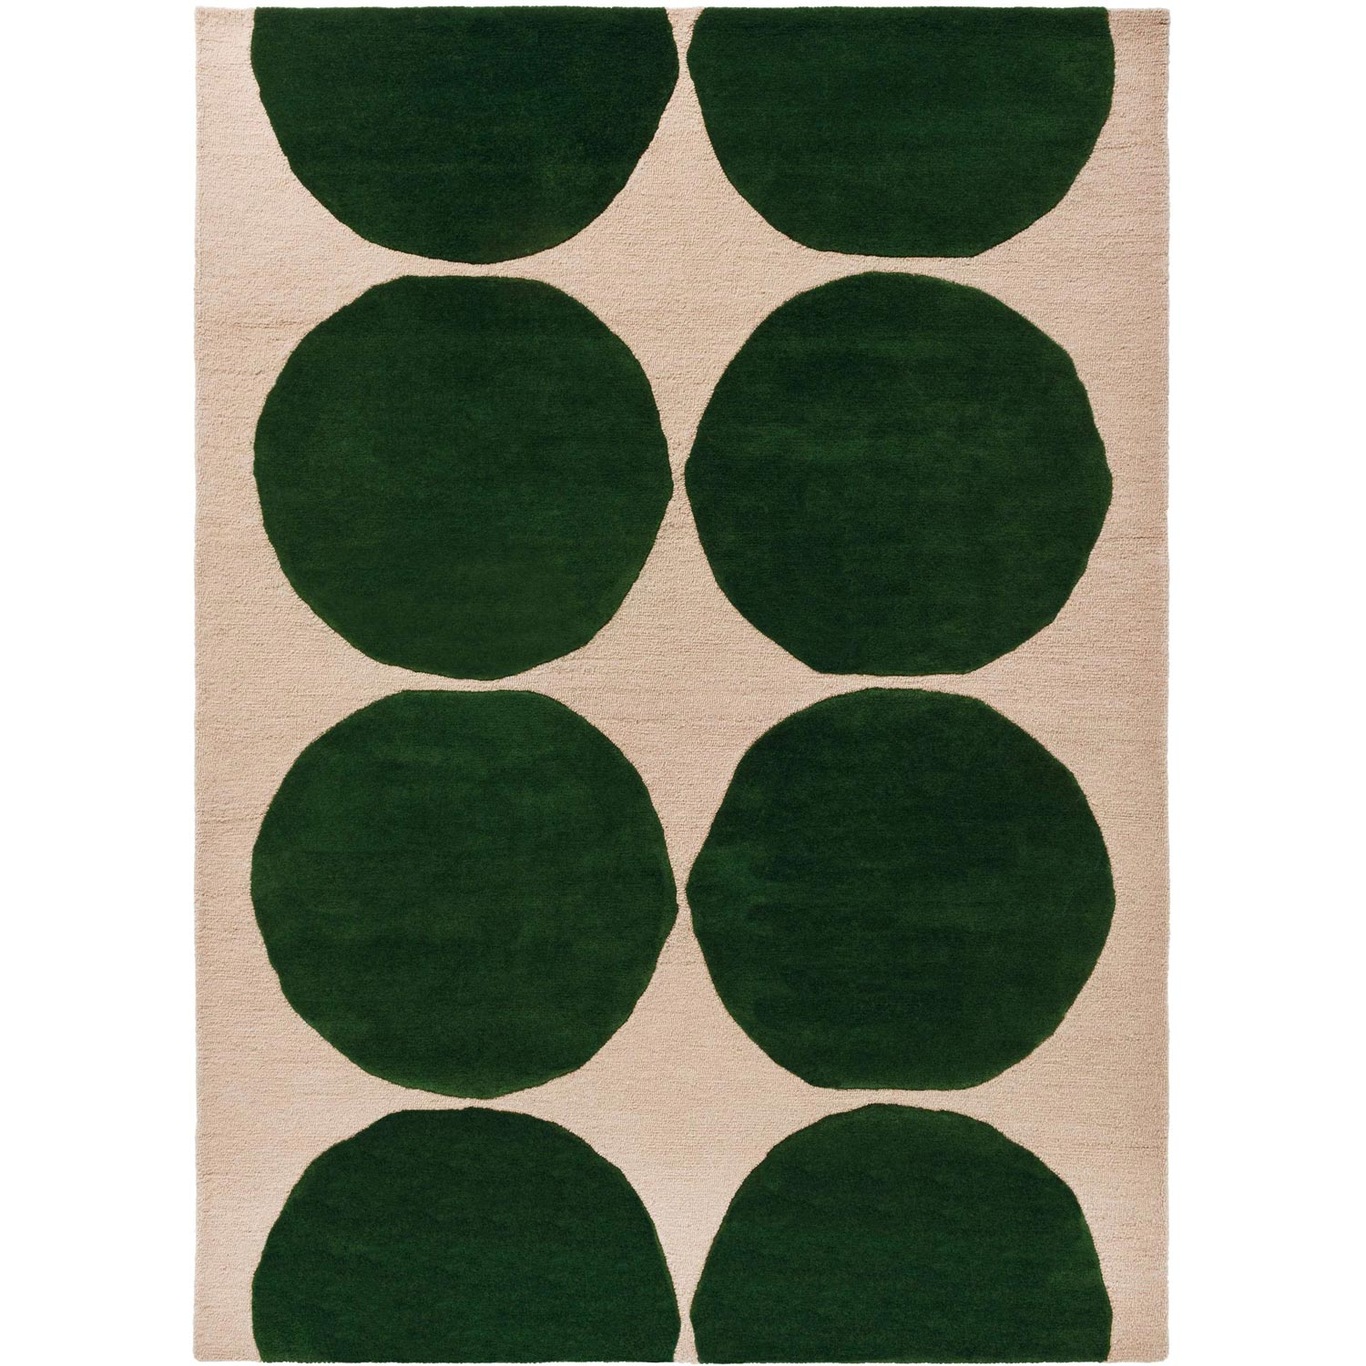 Marimekko Isot Kivet Teppe 170x240 cm, Grønn